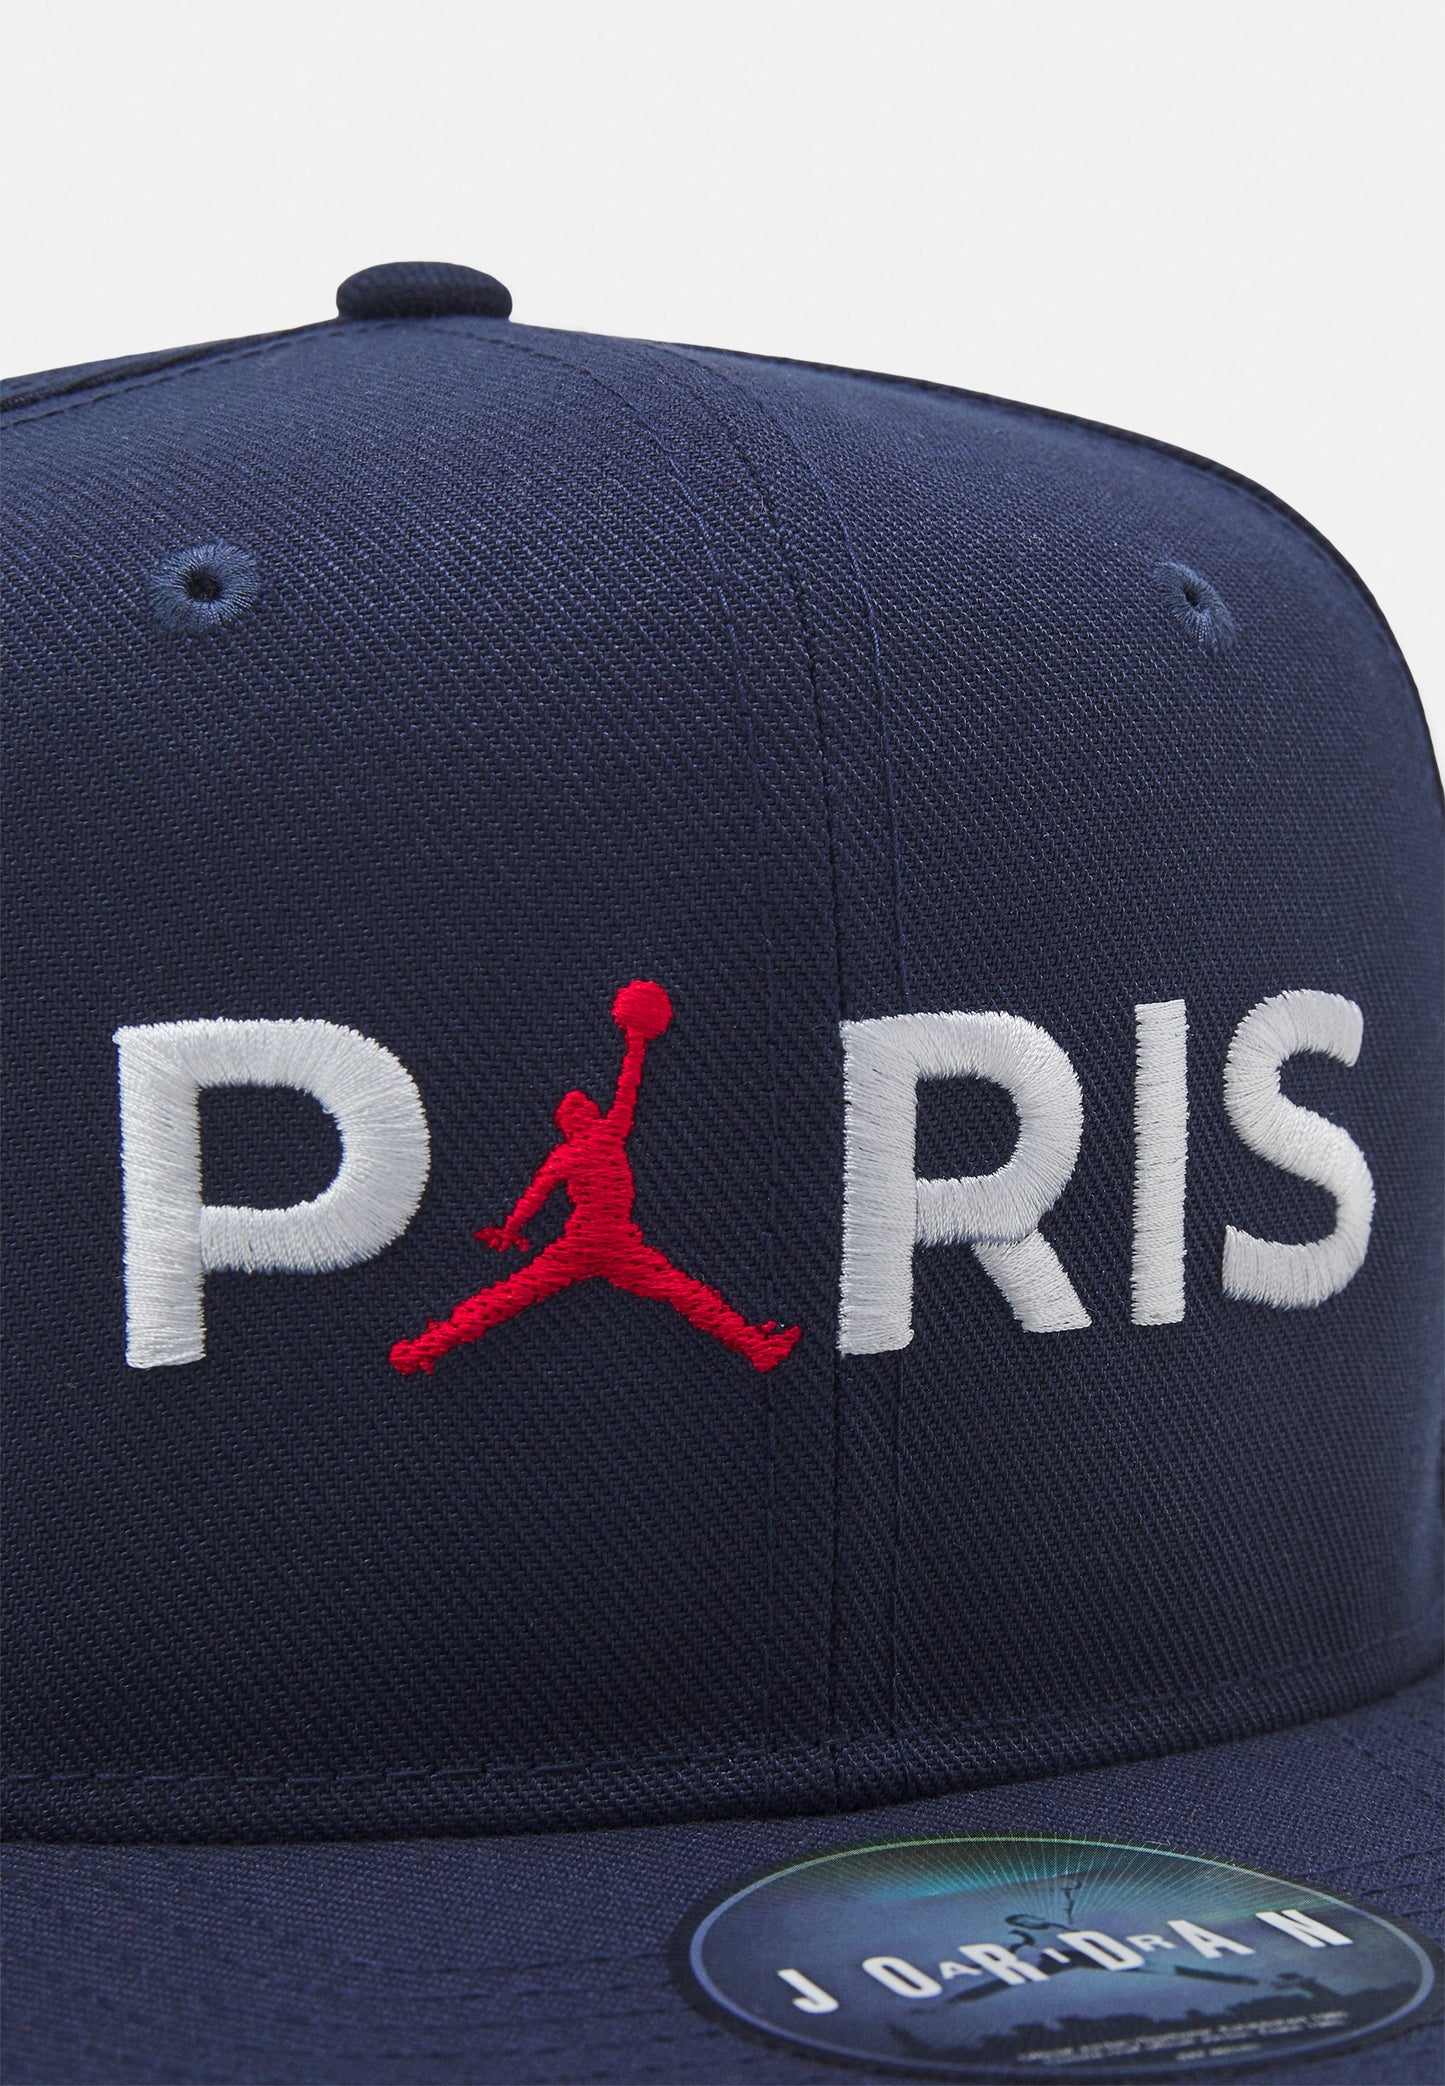 Jordan Paris unisex hat